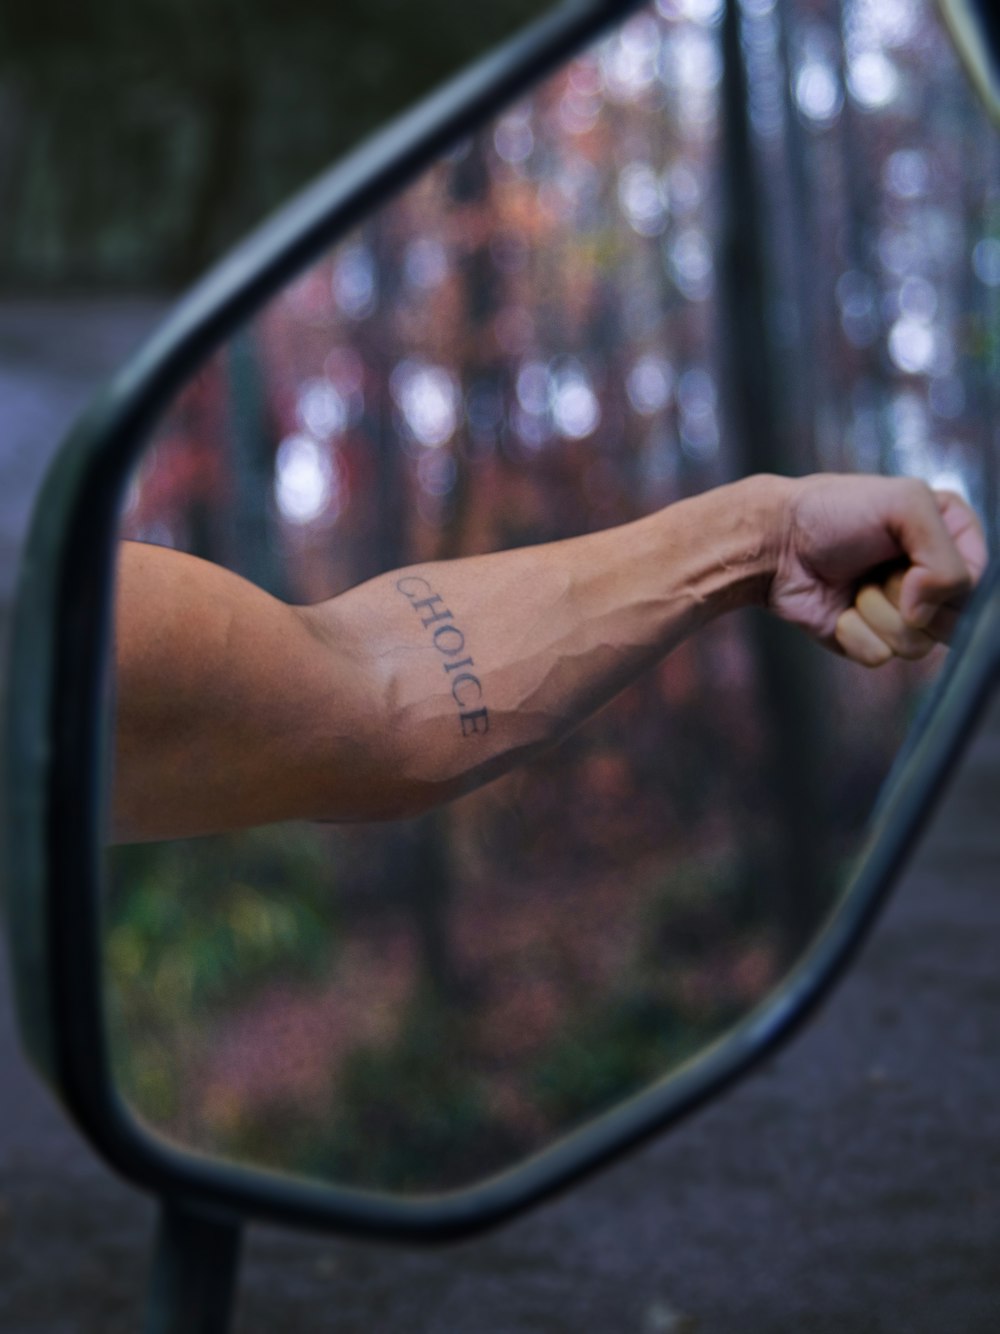 El brazo de una persona se refleja en el espejo retrovisor lateral de un automóvil